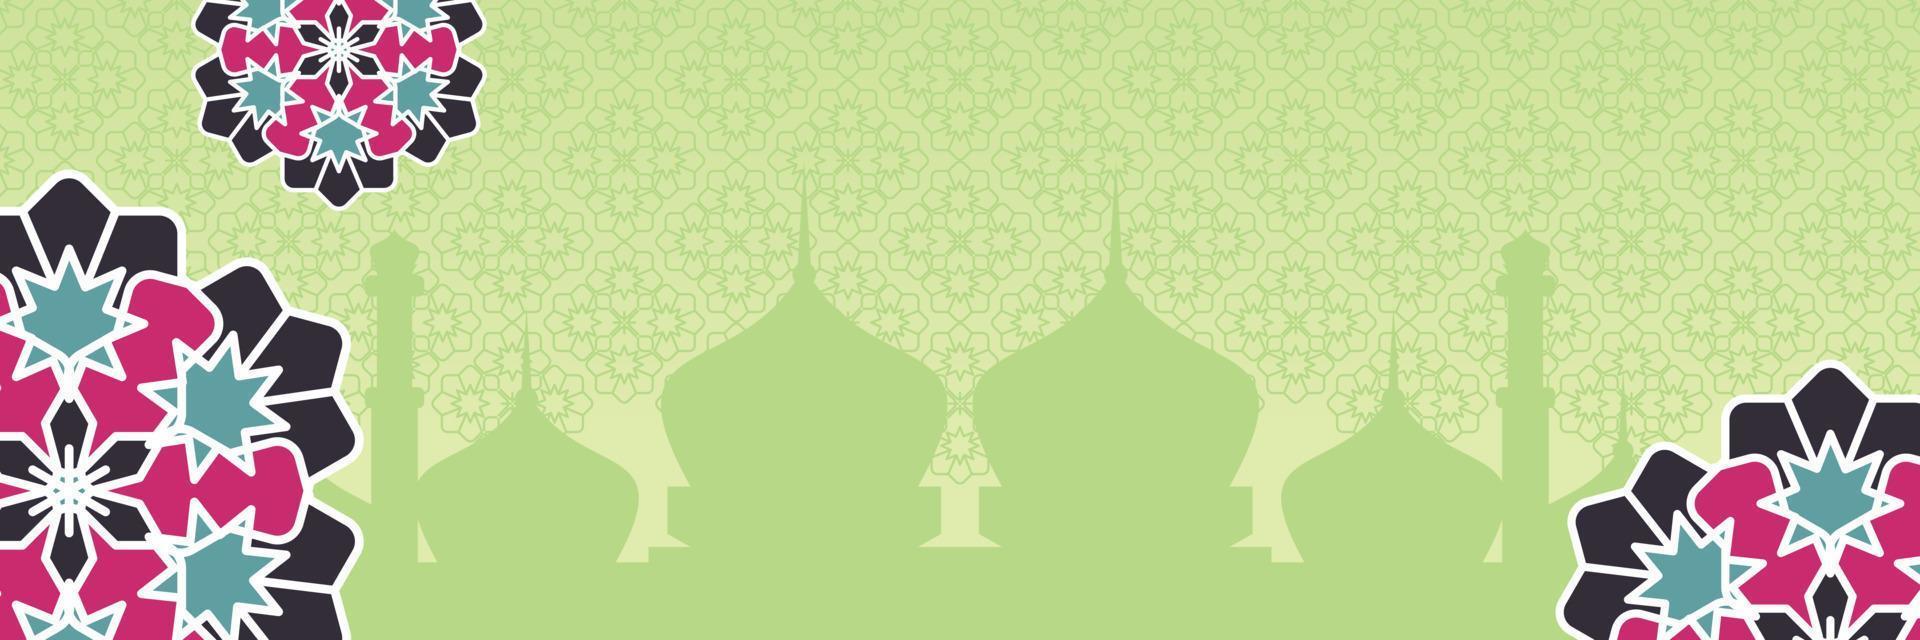 islamique arrière-plan, avec magnifique mandala ornement. vecteur modèle pour bannières, salutation cartes pour islamique vacances, eid Al Fitr, ramadan, eid Al adha